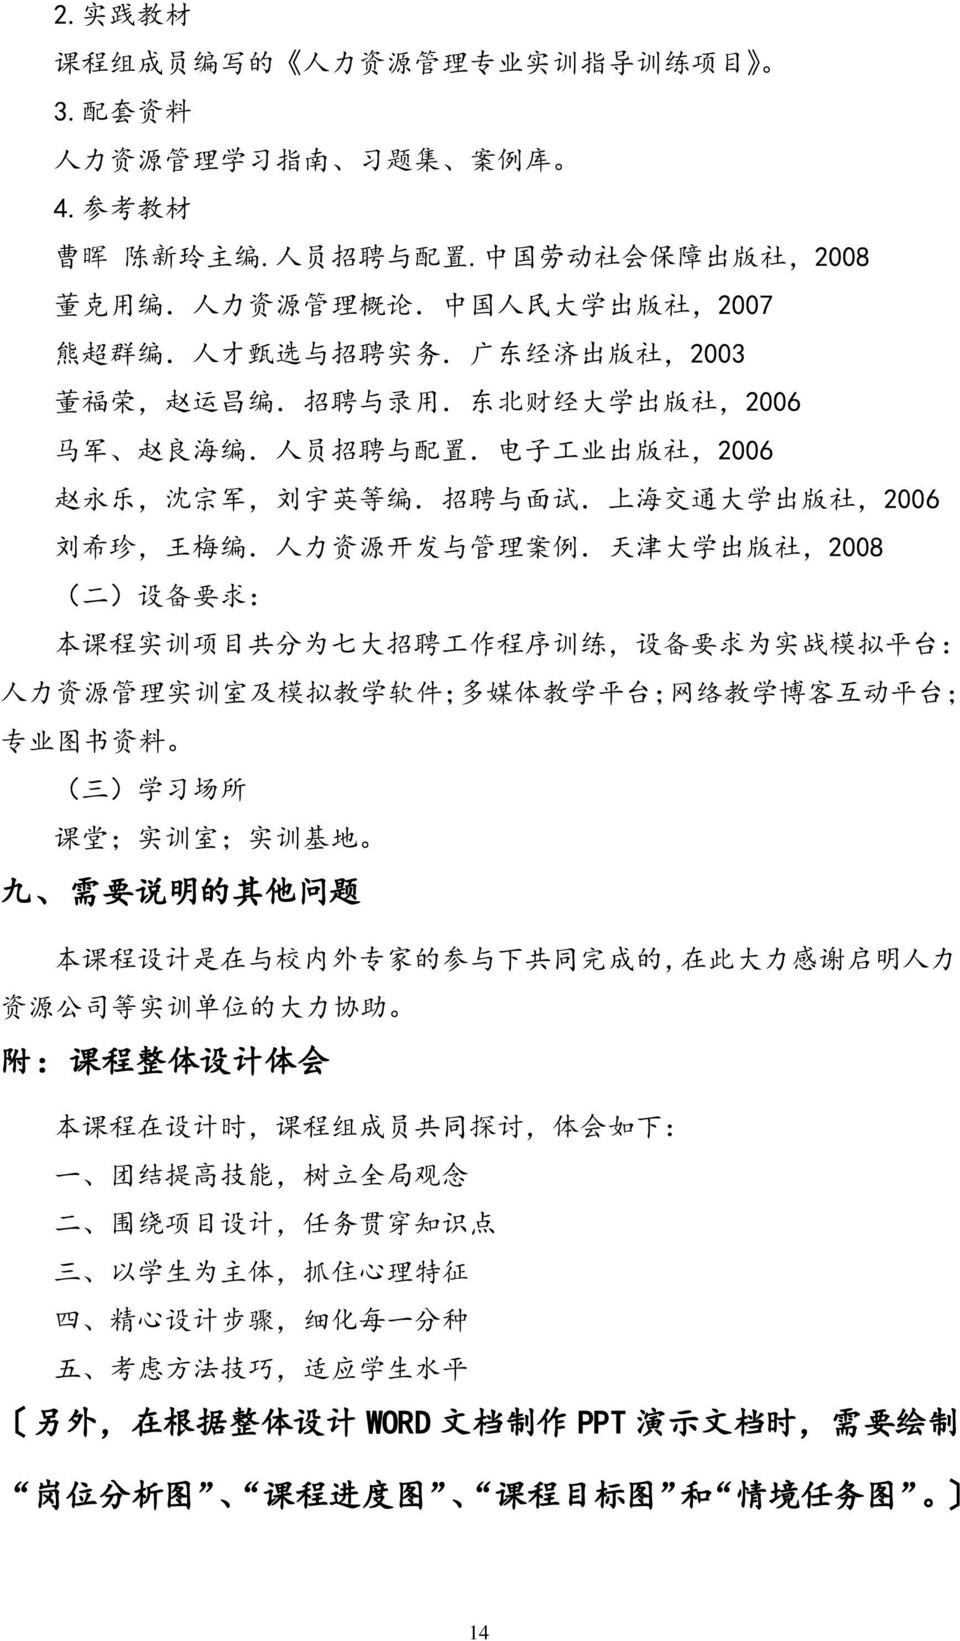 上 海 交 通 大 学 出 版 社,006 刘 希 珍, 王 梅 编. 人 力 资 源 开 发 与 管 理 案 例.